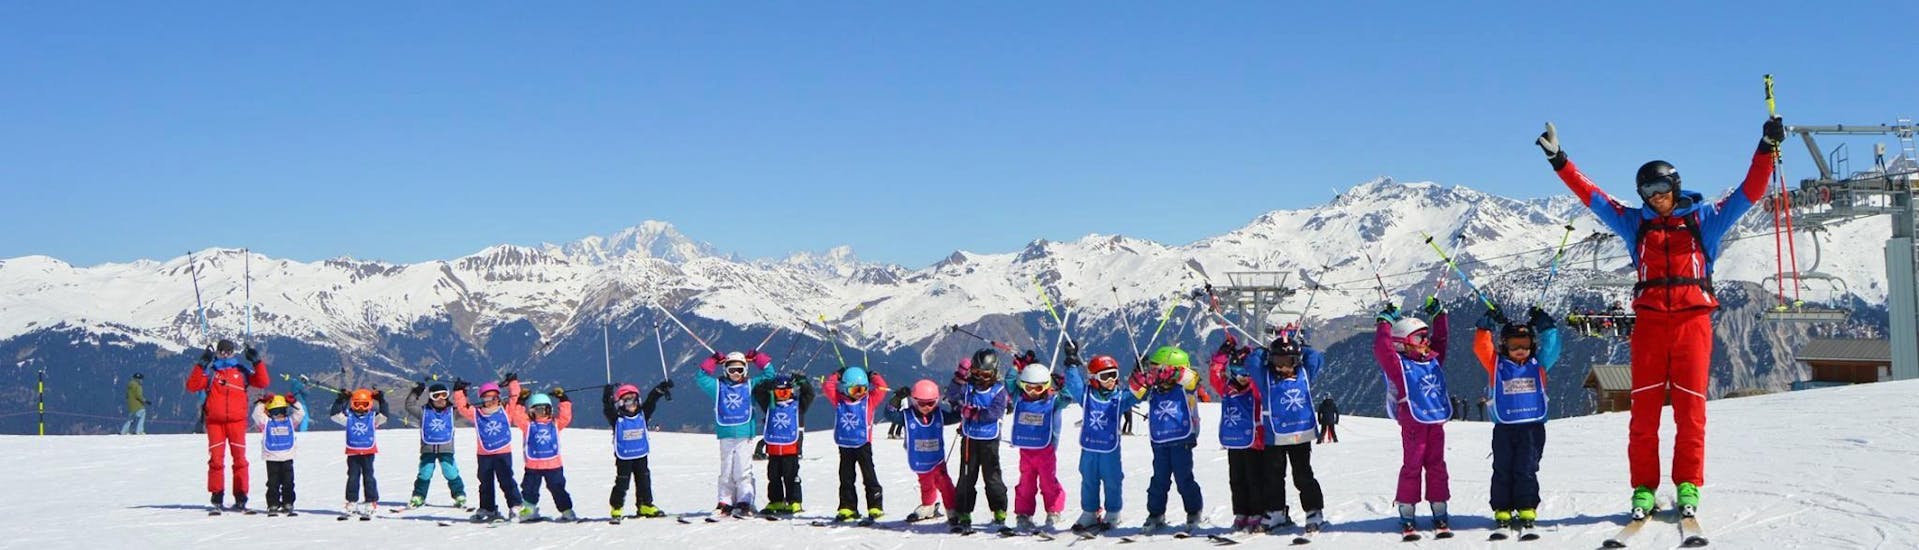 Clases de esquí para niños "Super 7" (6-12 años) - Máximo 7 por grupo.